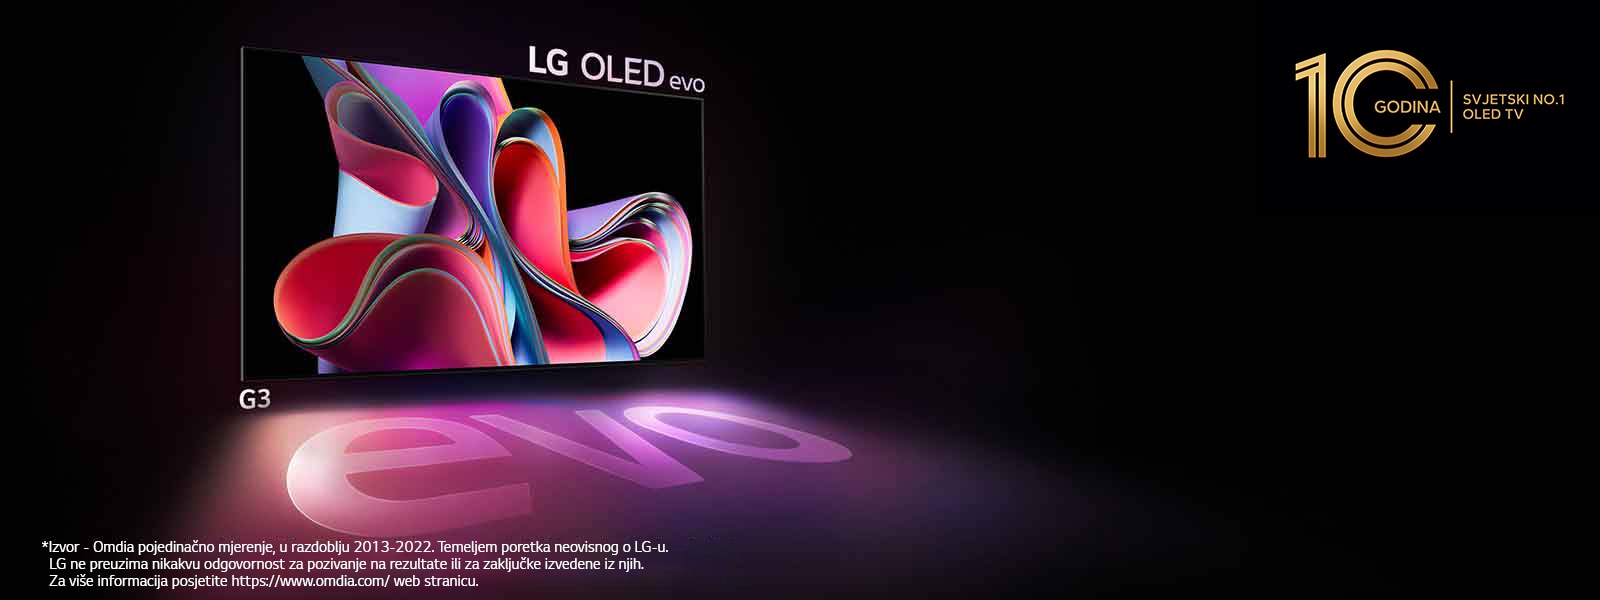 LG OLED G3 sveti v temi.  V zgornjem desnem delu je logotip za 10. obletnico OLED TV.